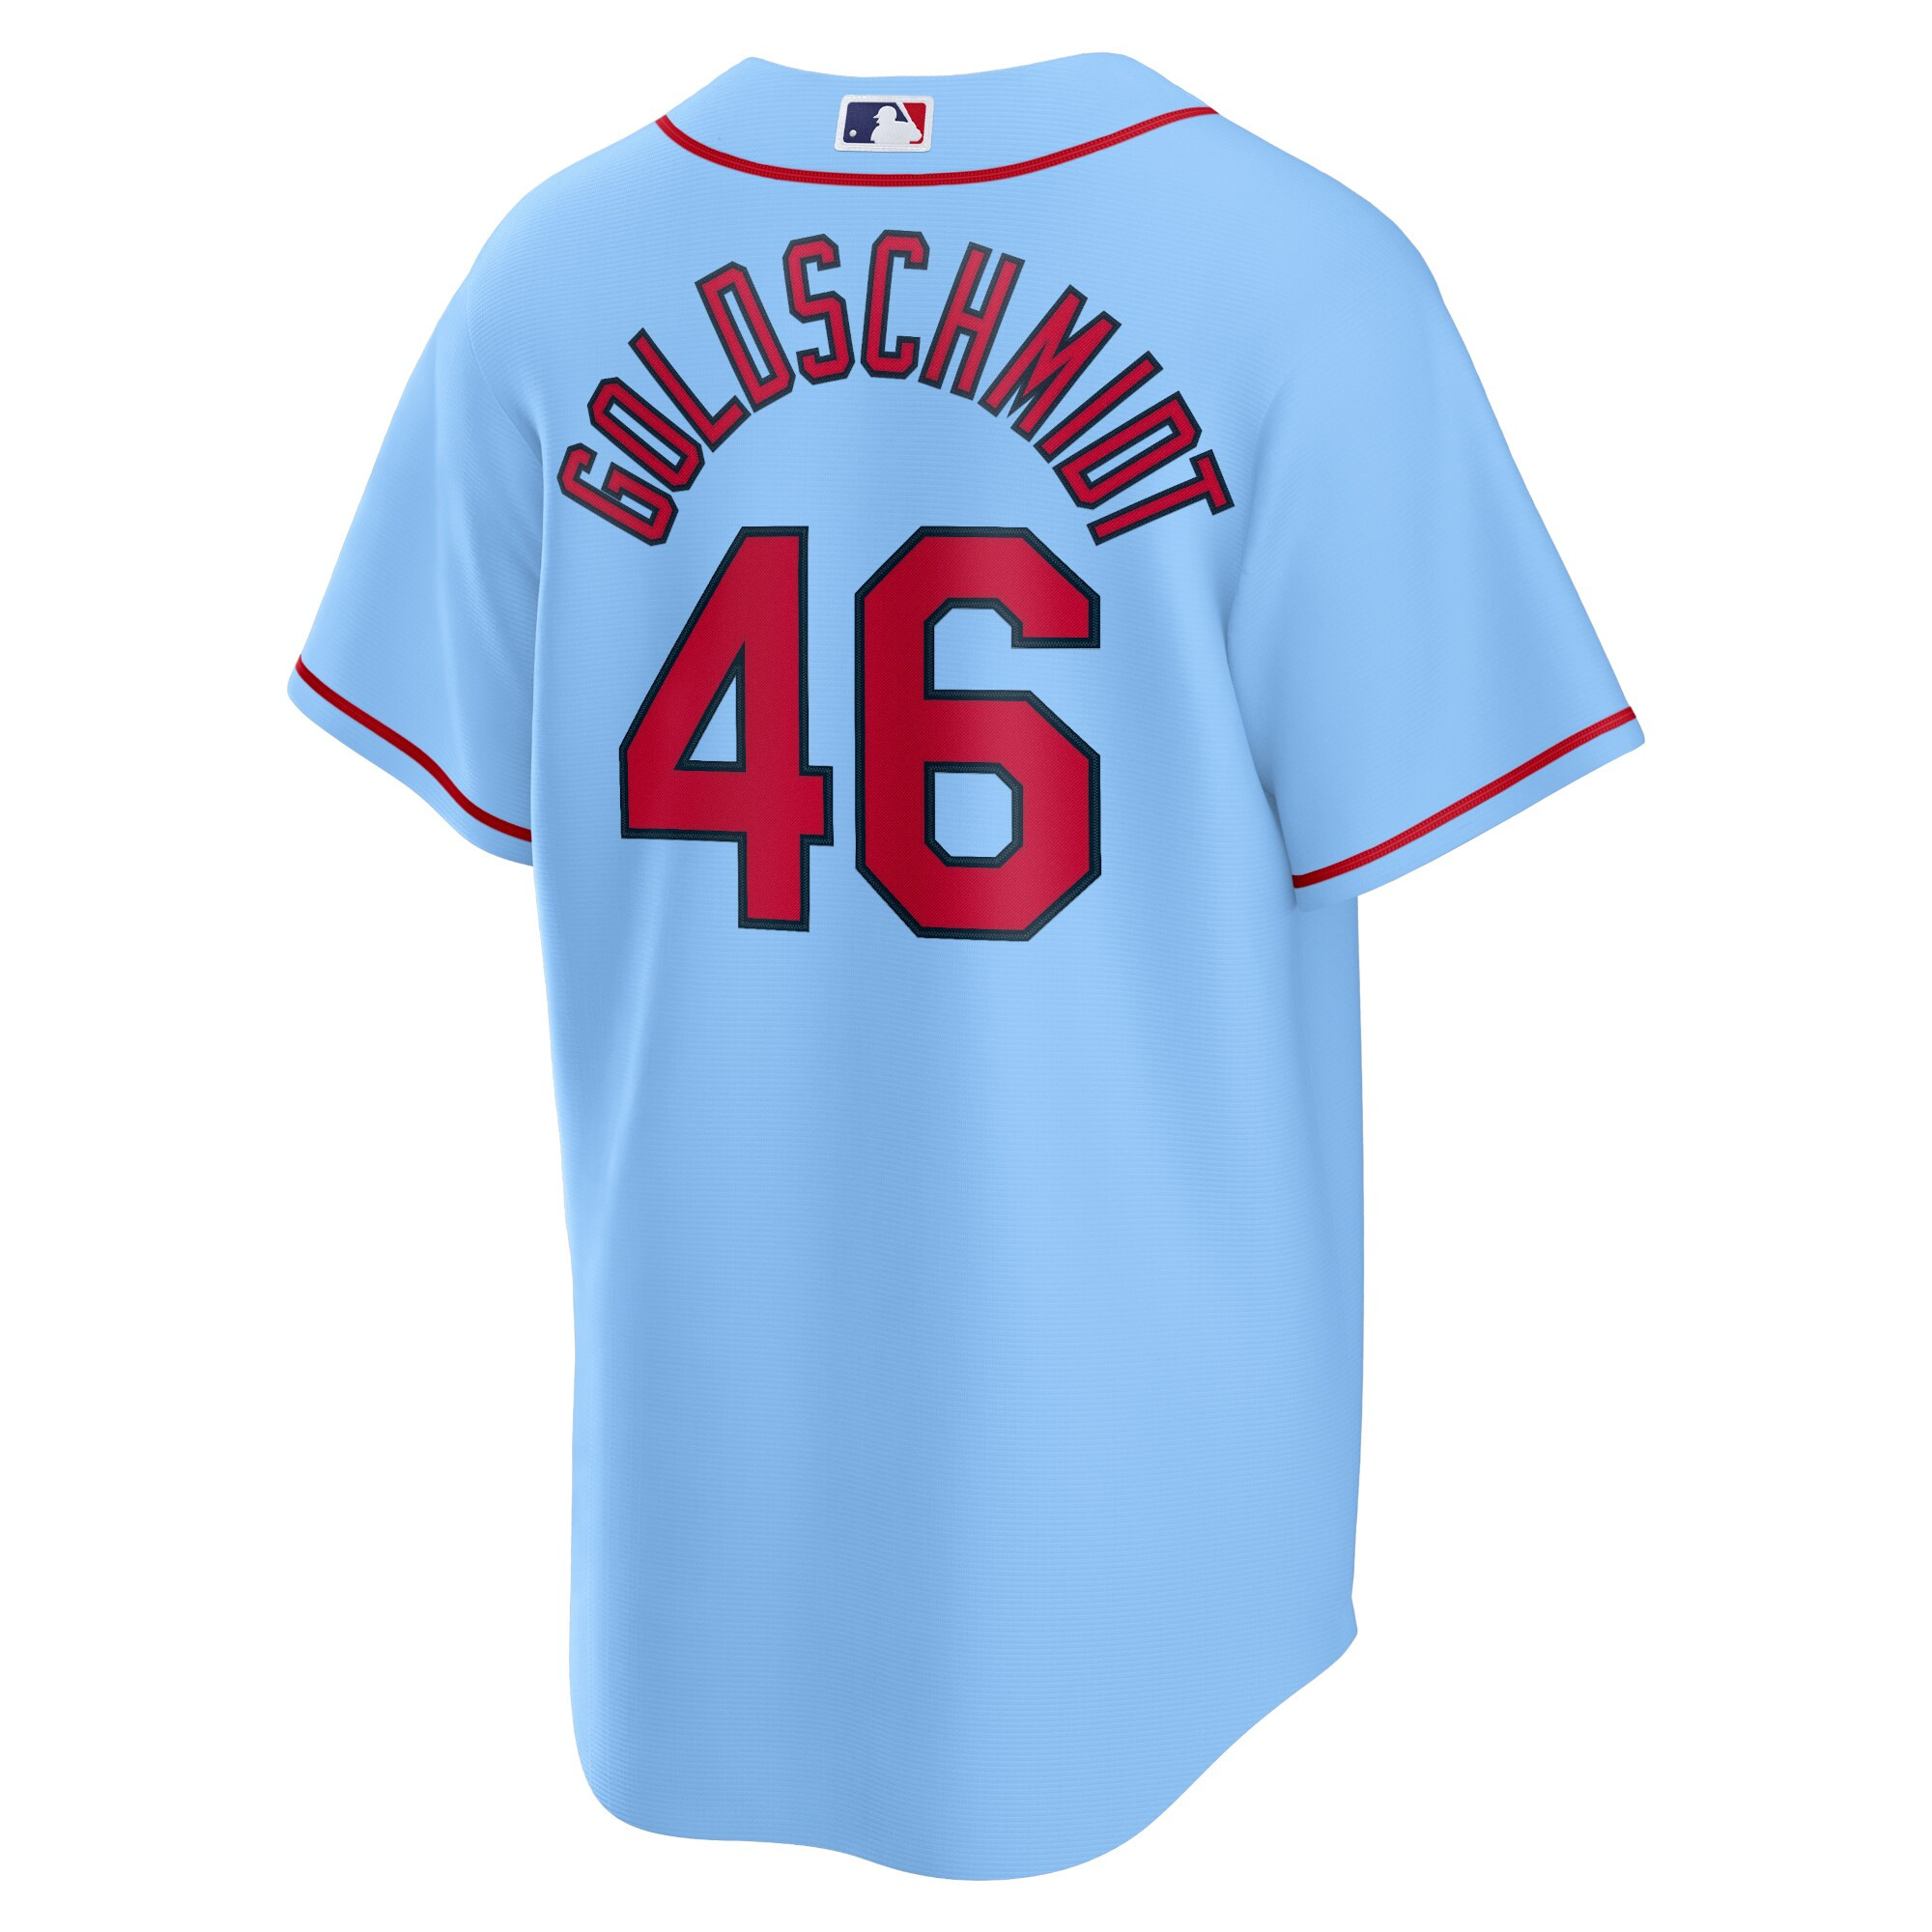 Men's Paul Goldschmidt St. Louis Cardinals Alternate Replica Player Name Jersey - Light Blue